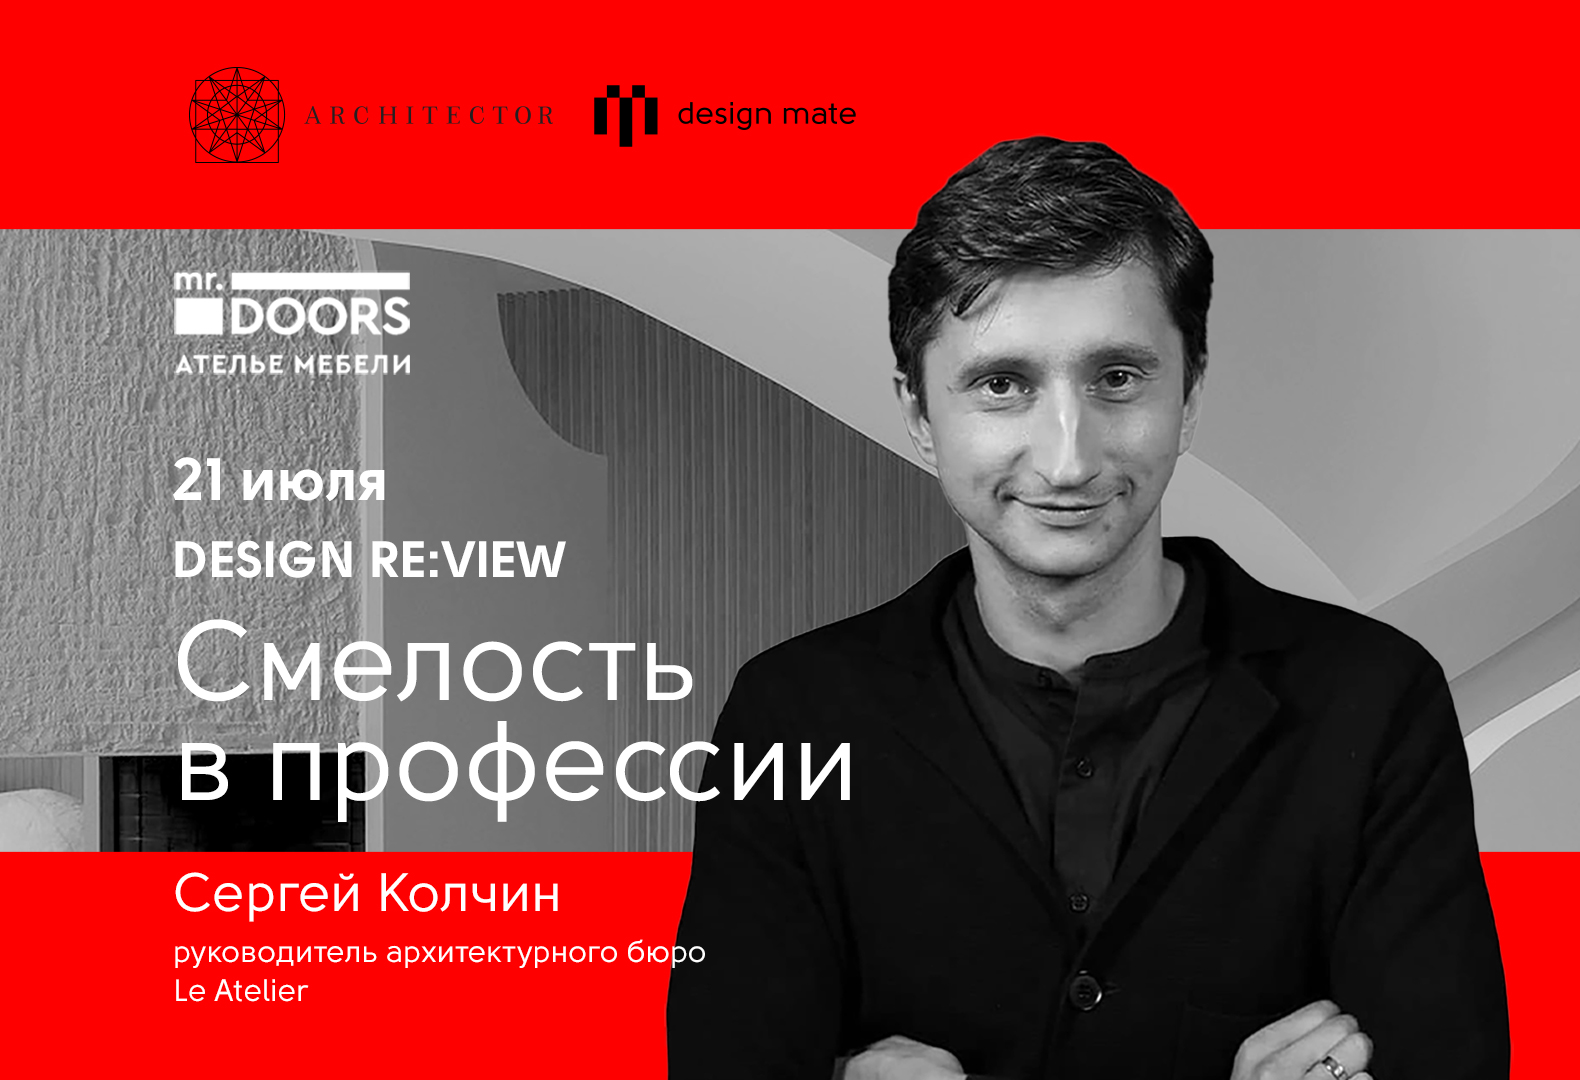 Сергей Колчин расскажет о смелости в профессии архитектора